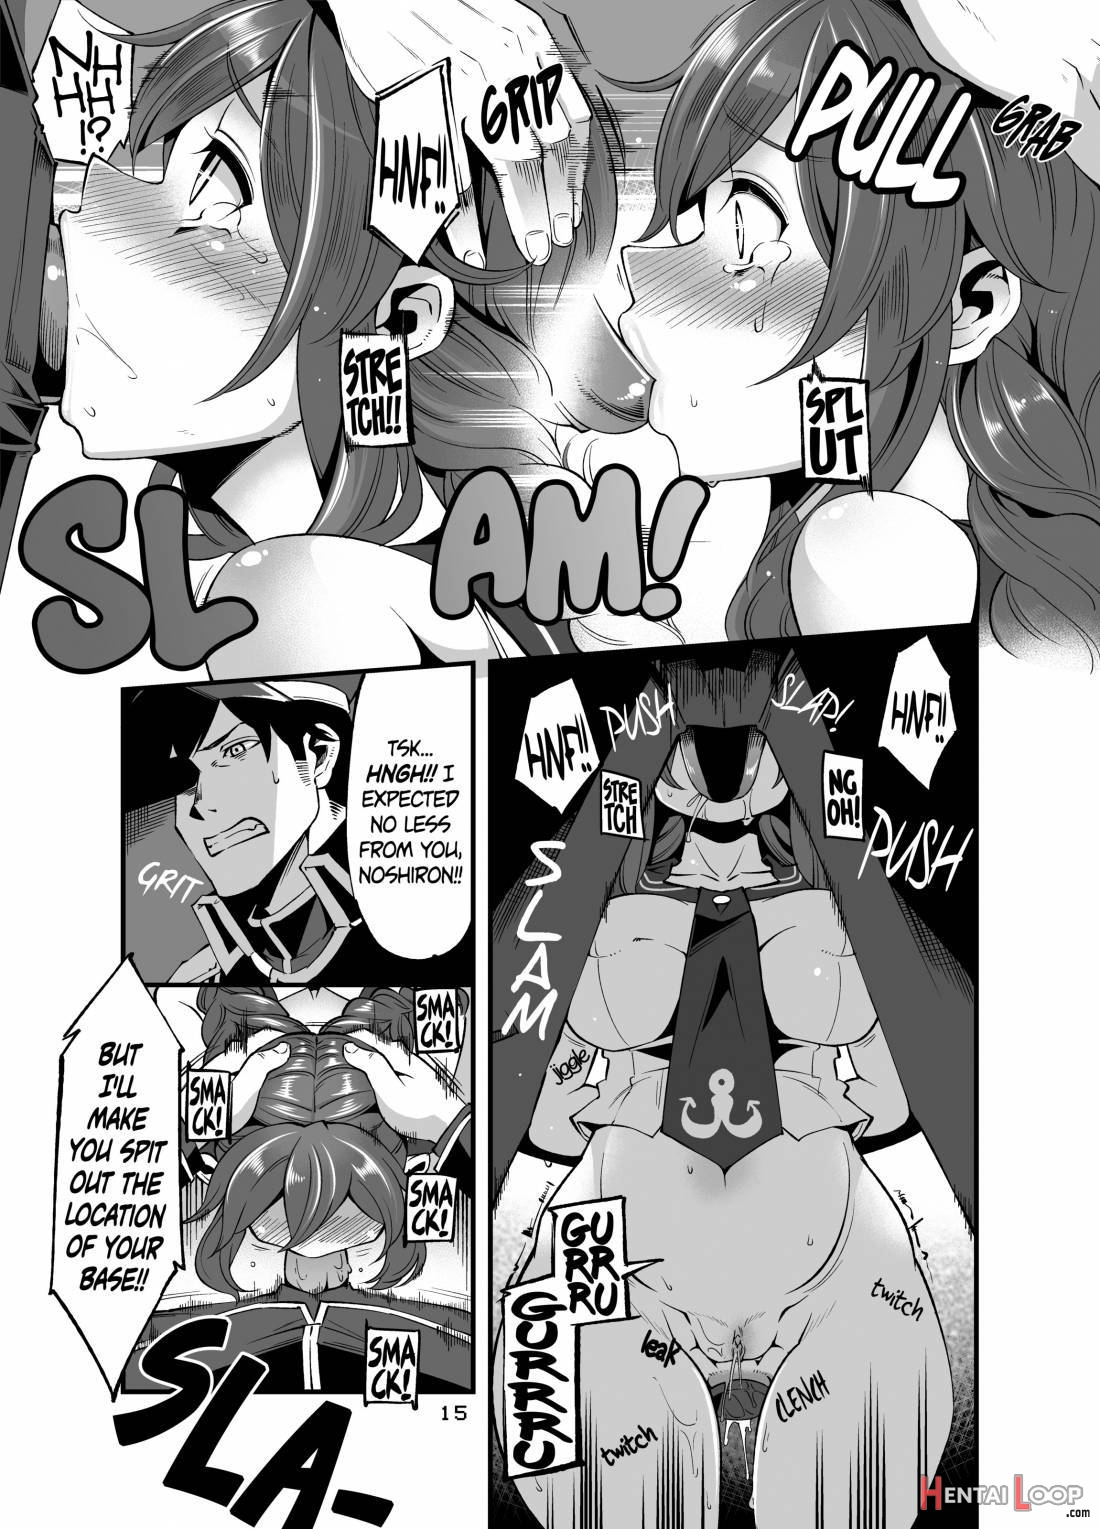 Noshiron Rokaku page 13